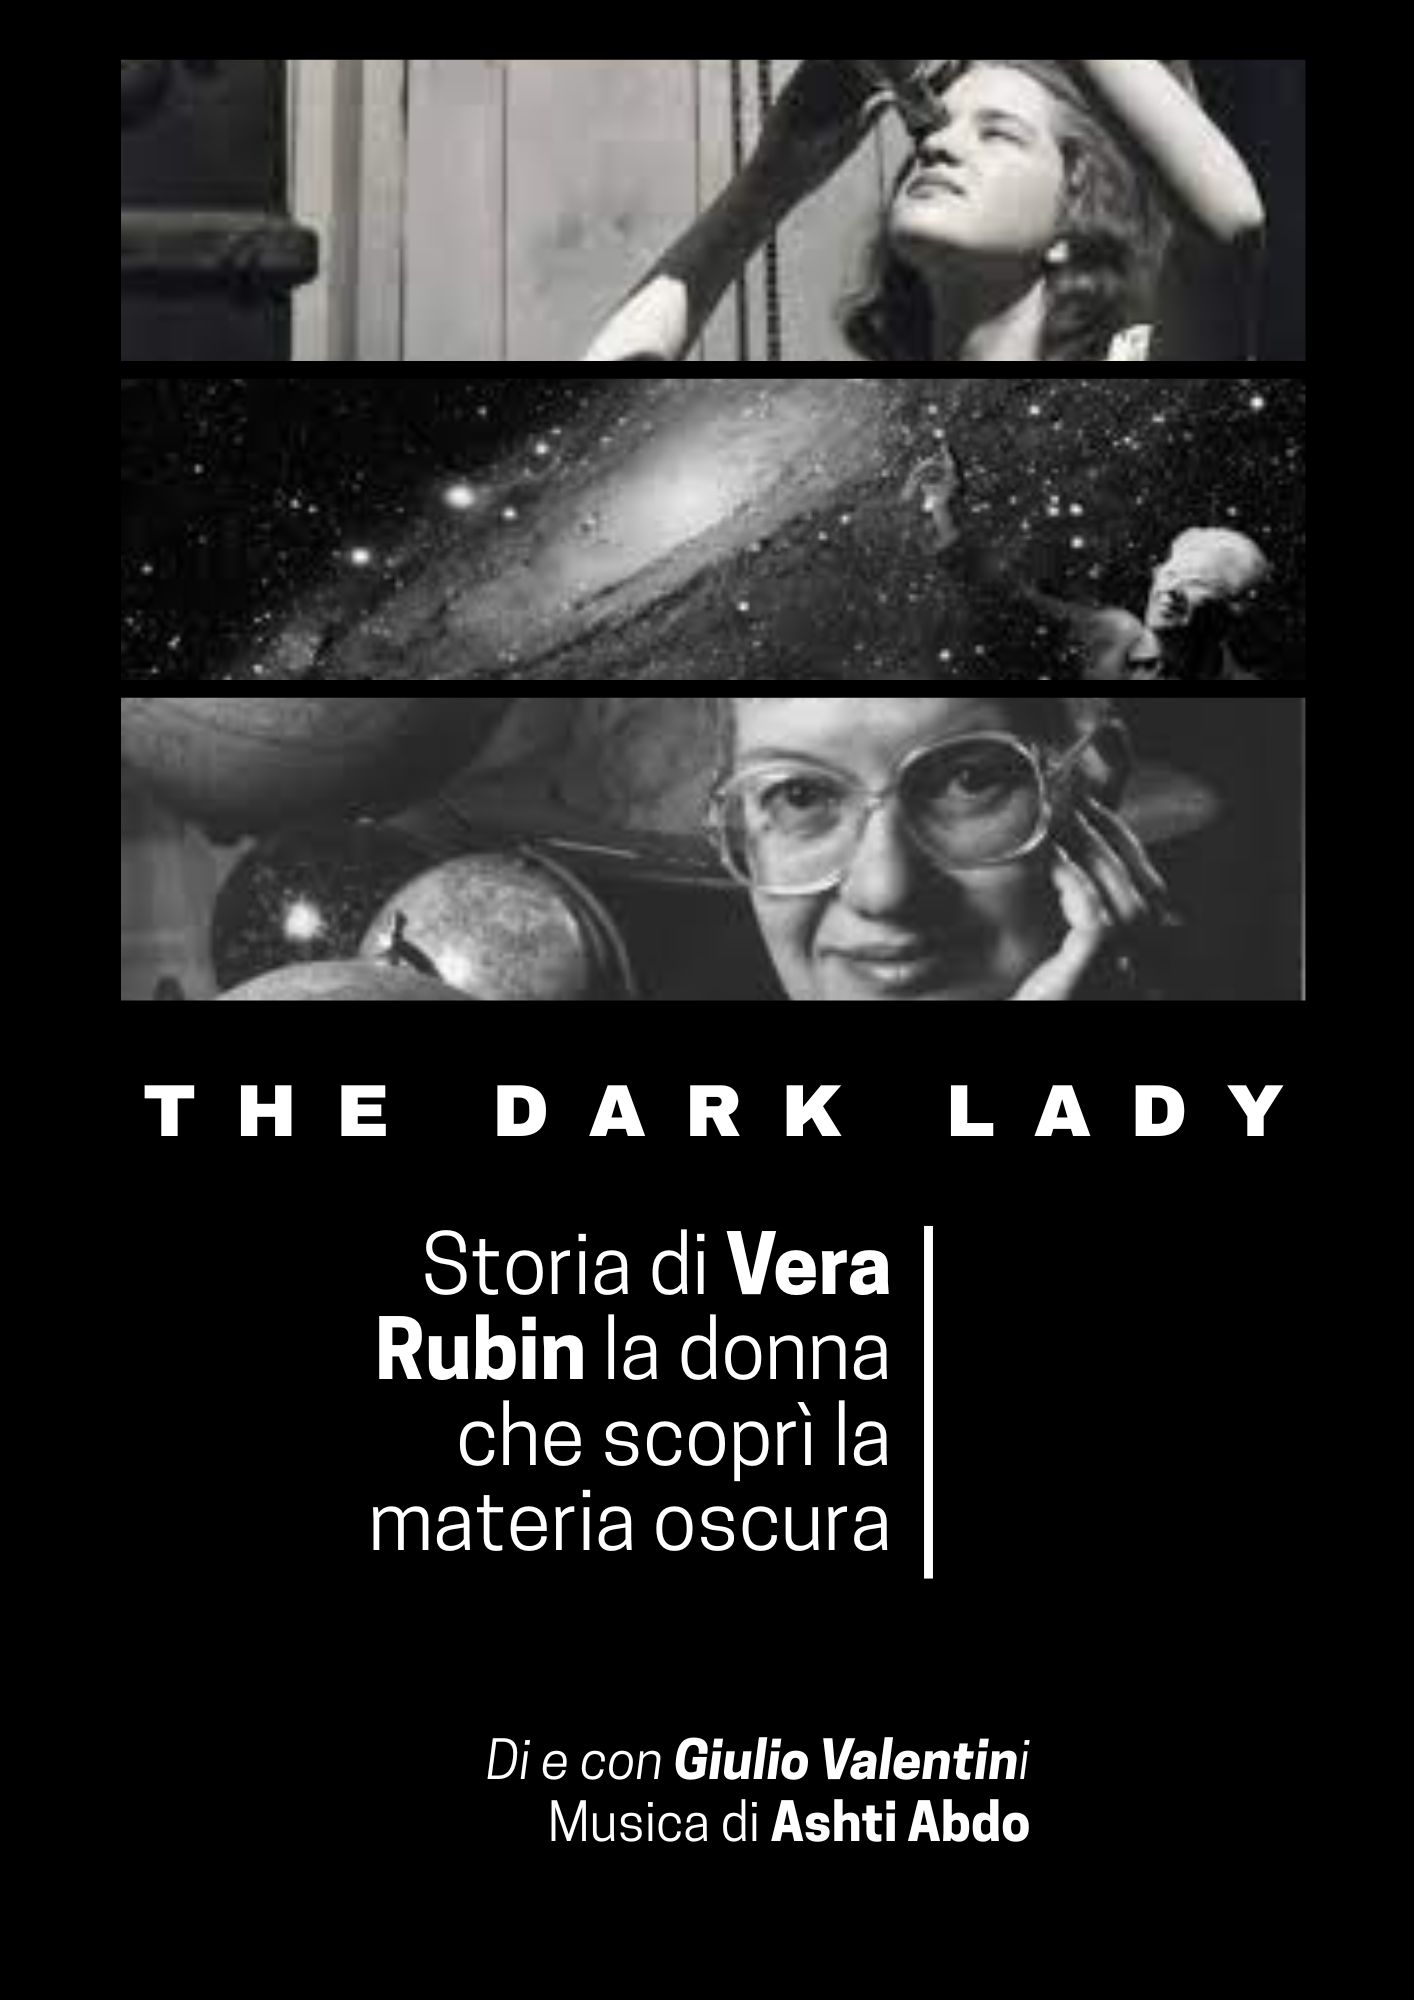 The Dark Lady - Storia di Vera Rubin la donna che scoprì la materia oscura